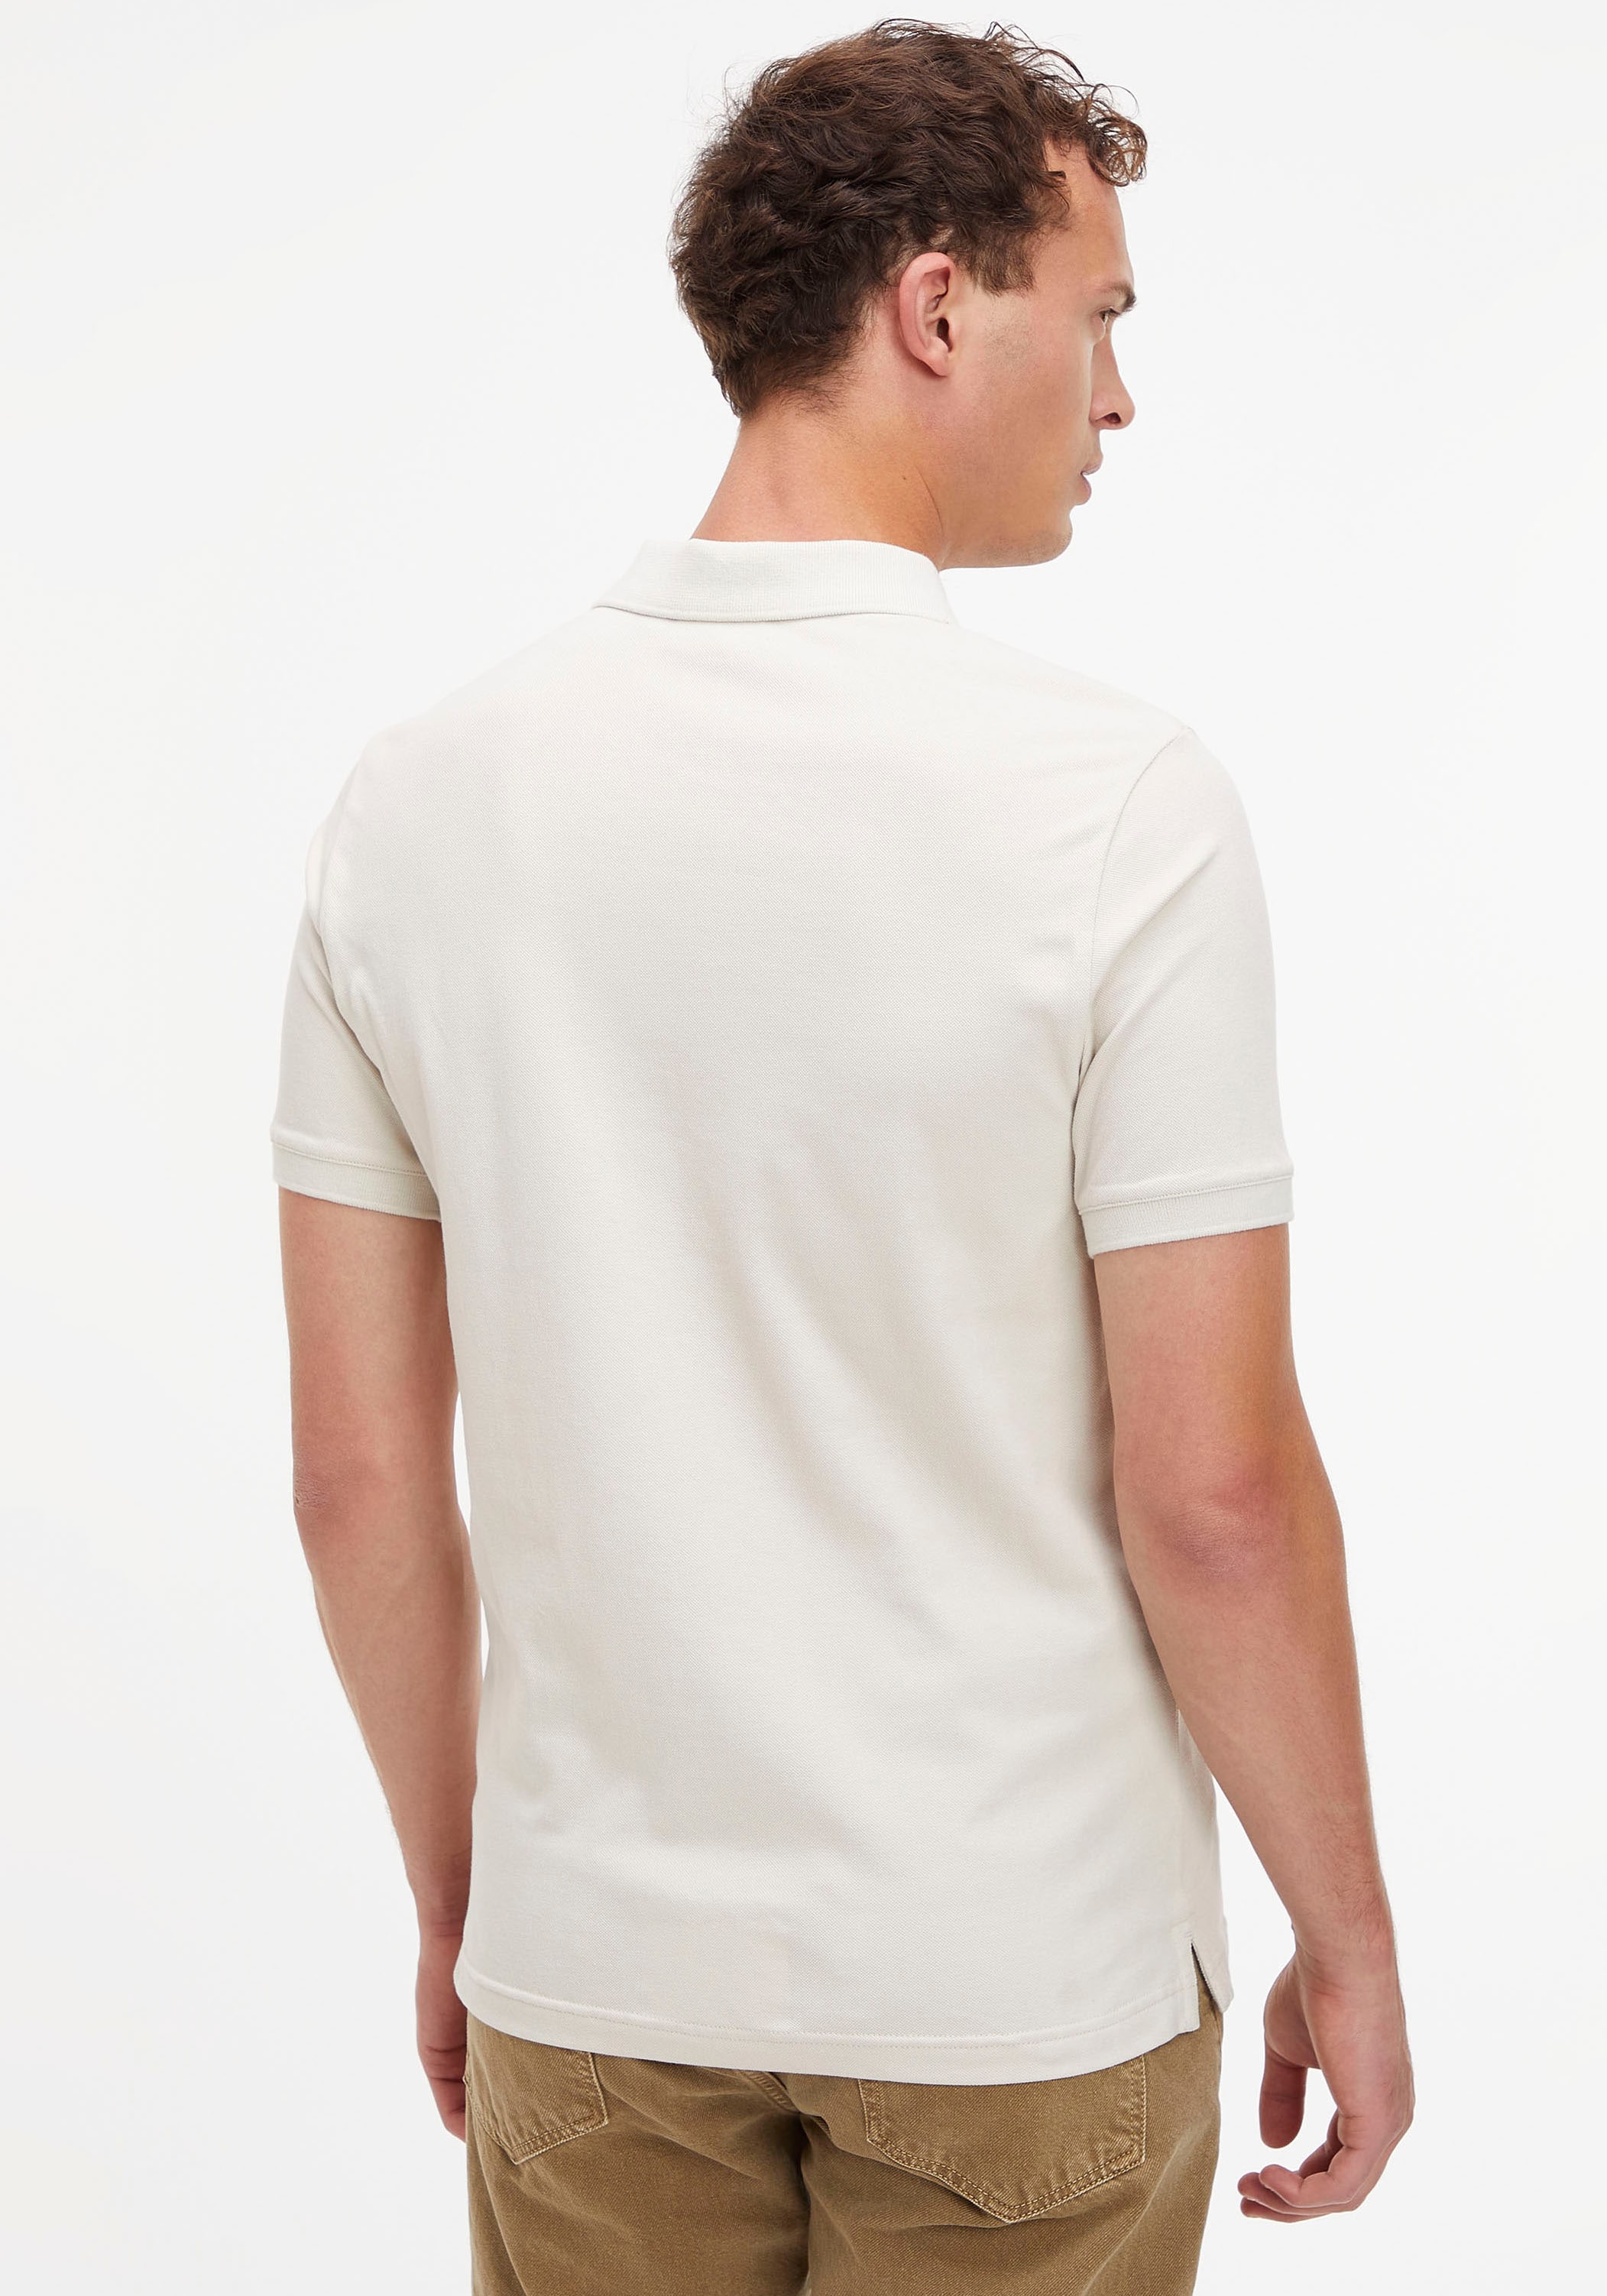 Calvin Klein Poloshirt, mit Calvin Klein Logo auf der Brust ▷ bestellen |  BAUR